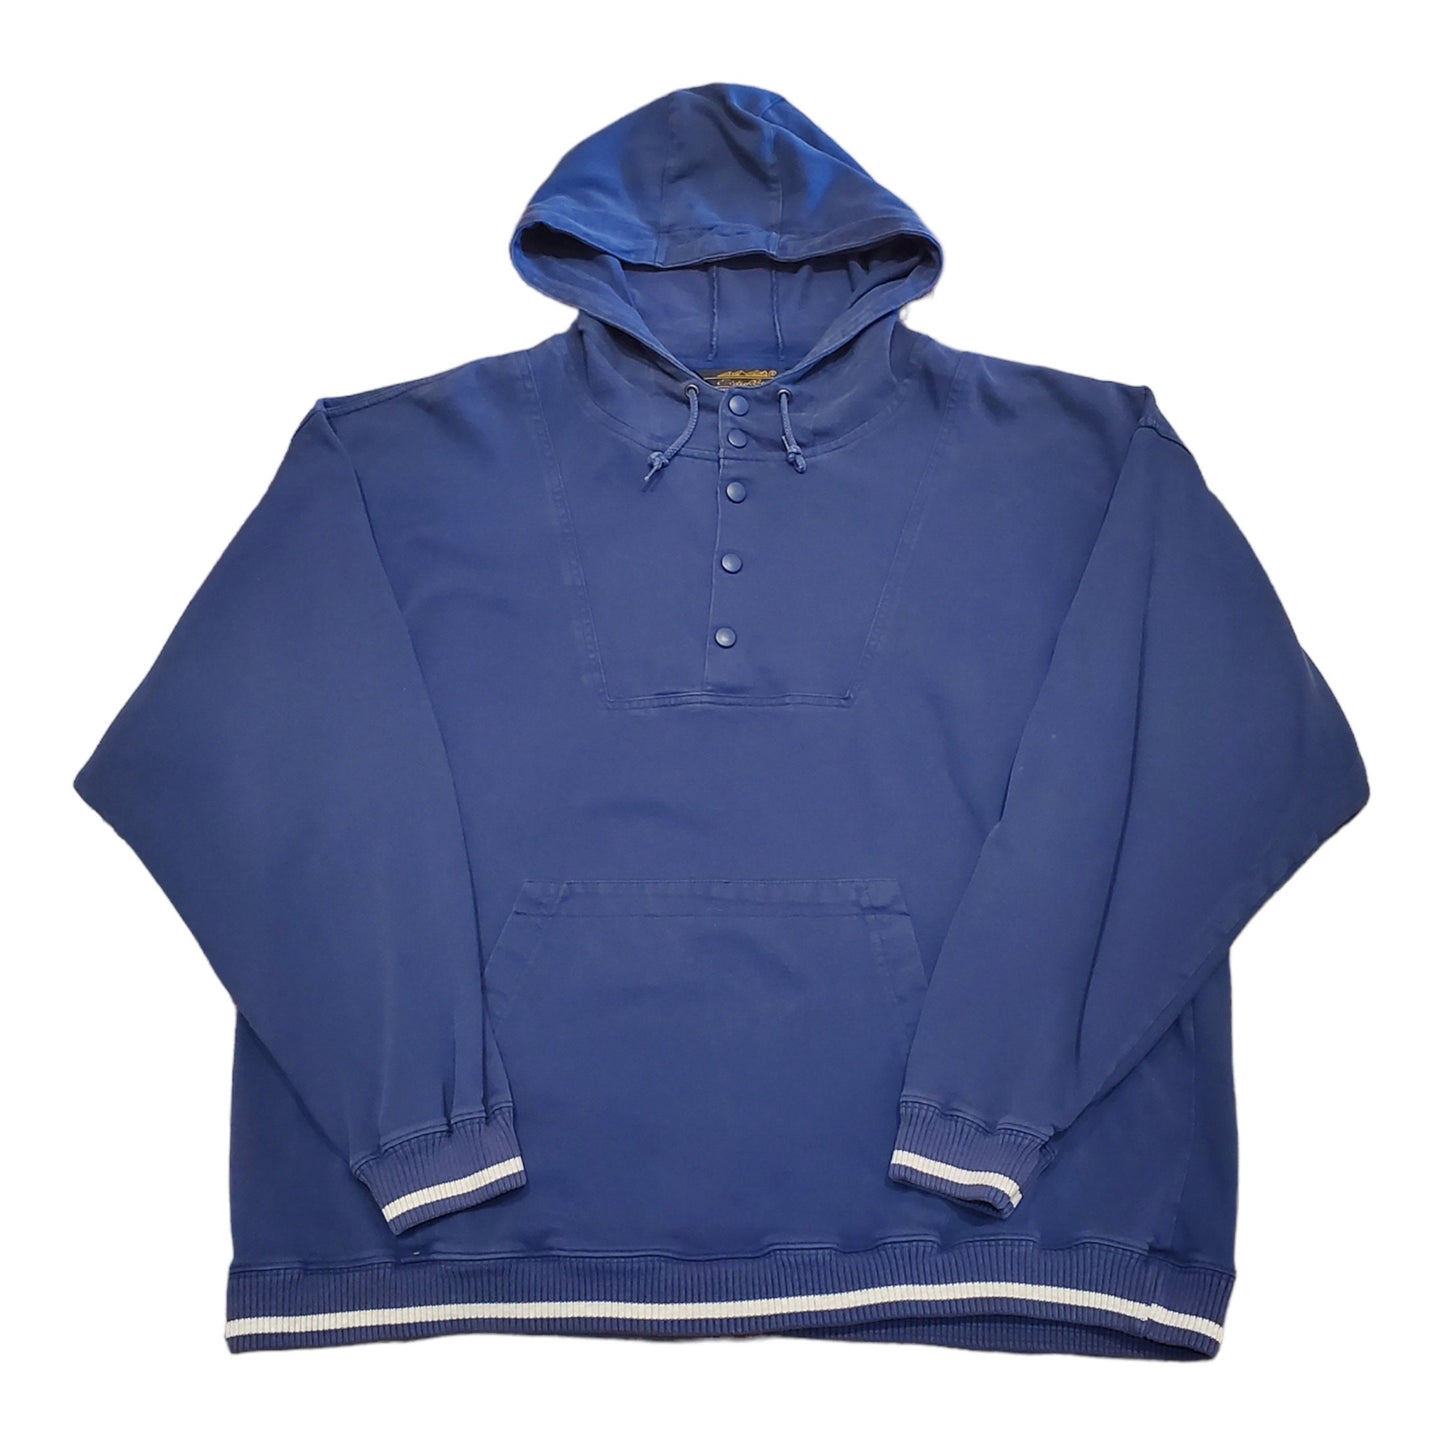 1980s/1990s Eddie Bauer Anorak Style Hoodie Sweatshirt Size XL